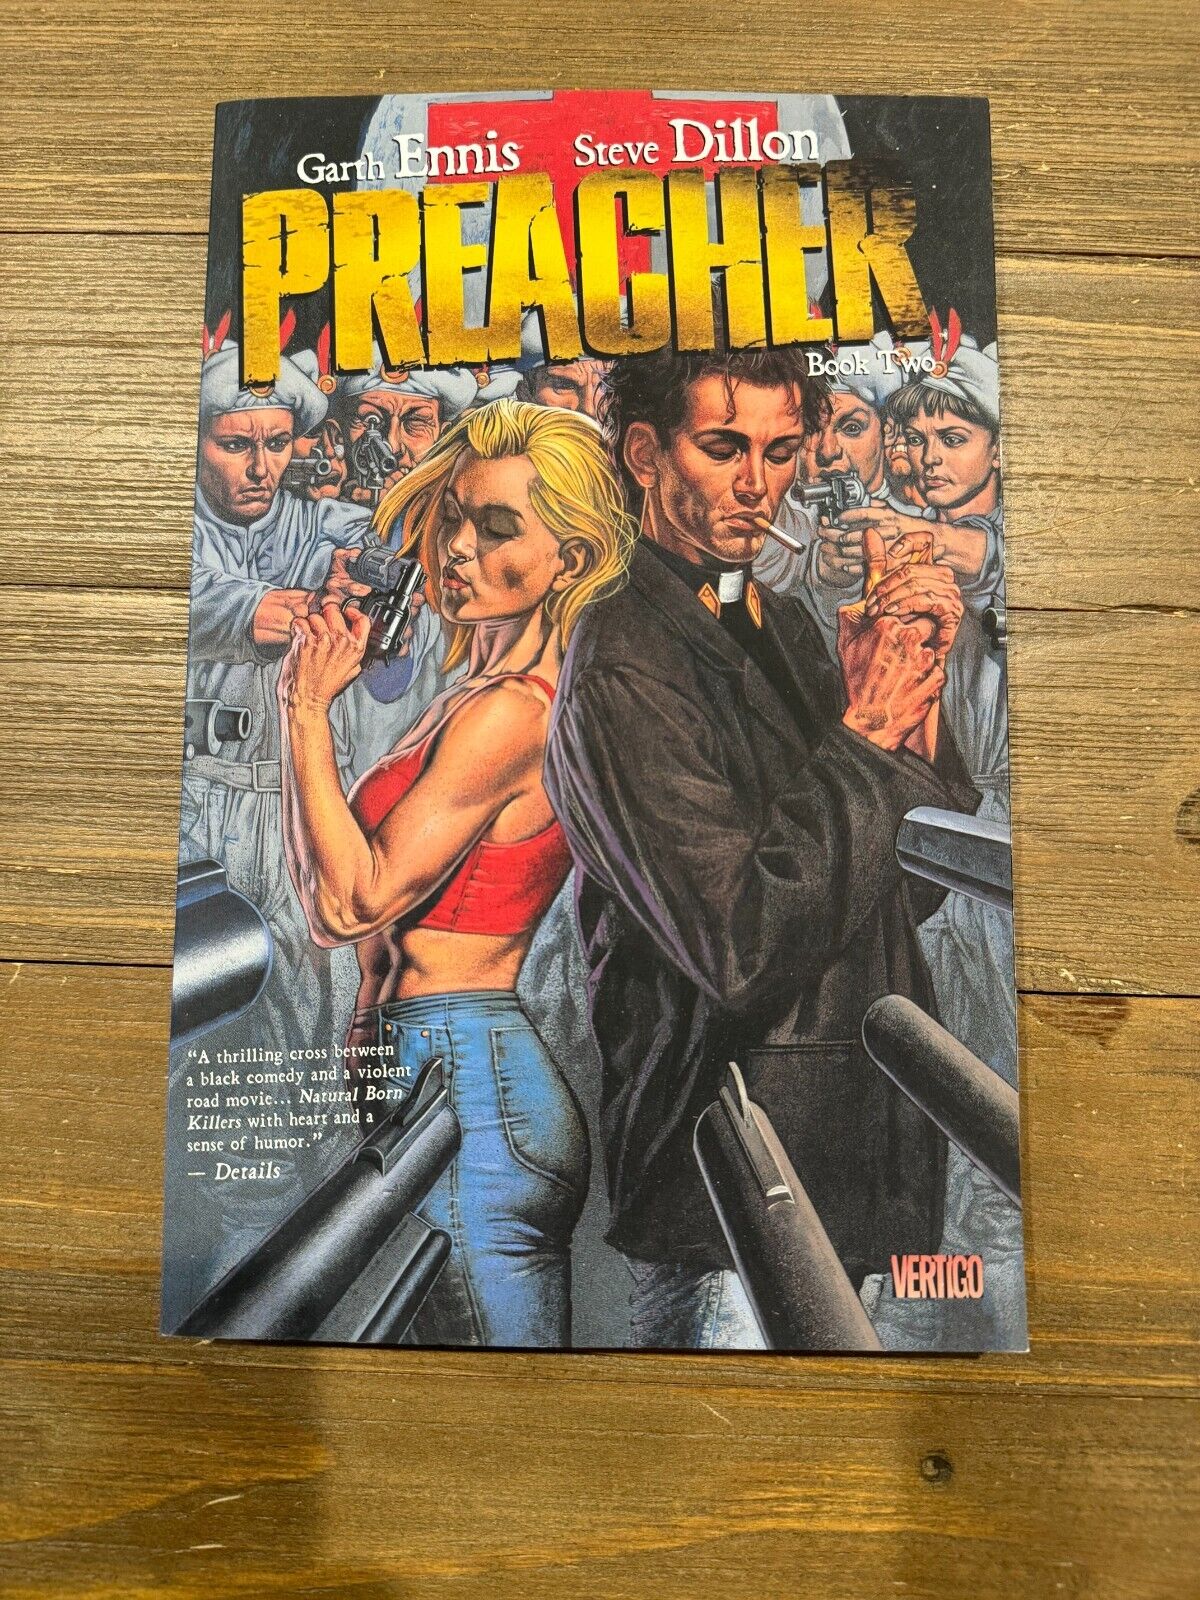 PREACHER Volume 2 Trade Paperback - Garth Ennis